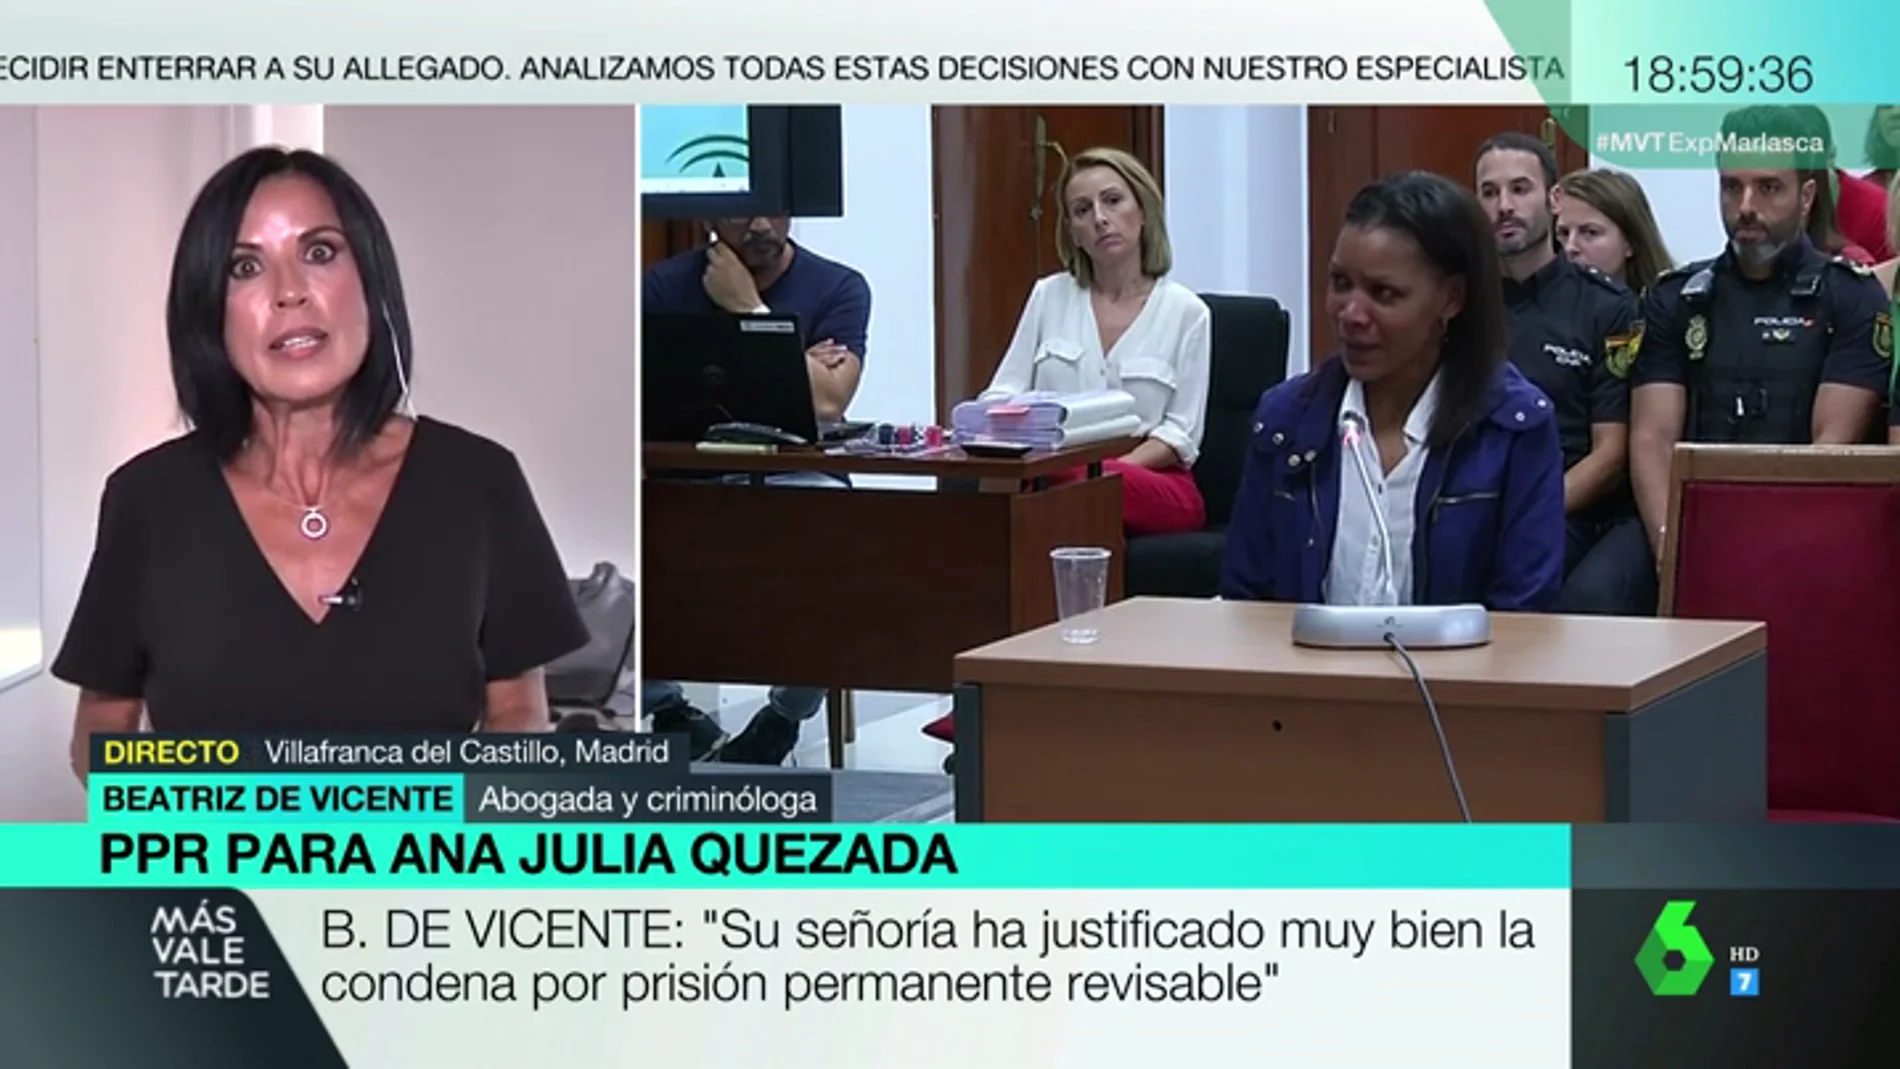 Beatriz de Vicente, sobre la condena a Ana Julia Quezada a prisión permanente revisable: "Difícilmente la puede tirar el Supremo"